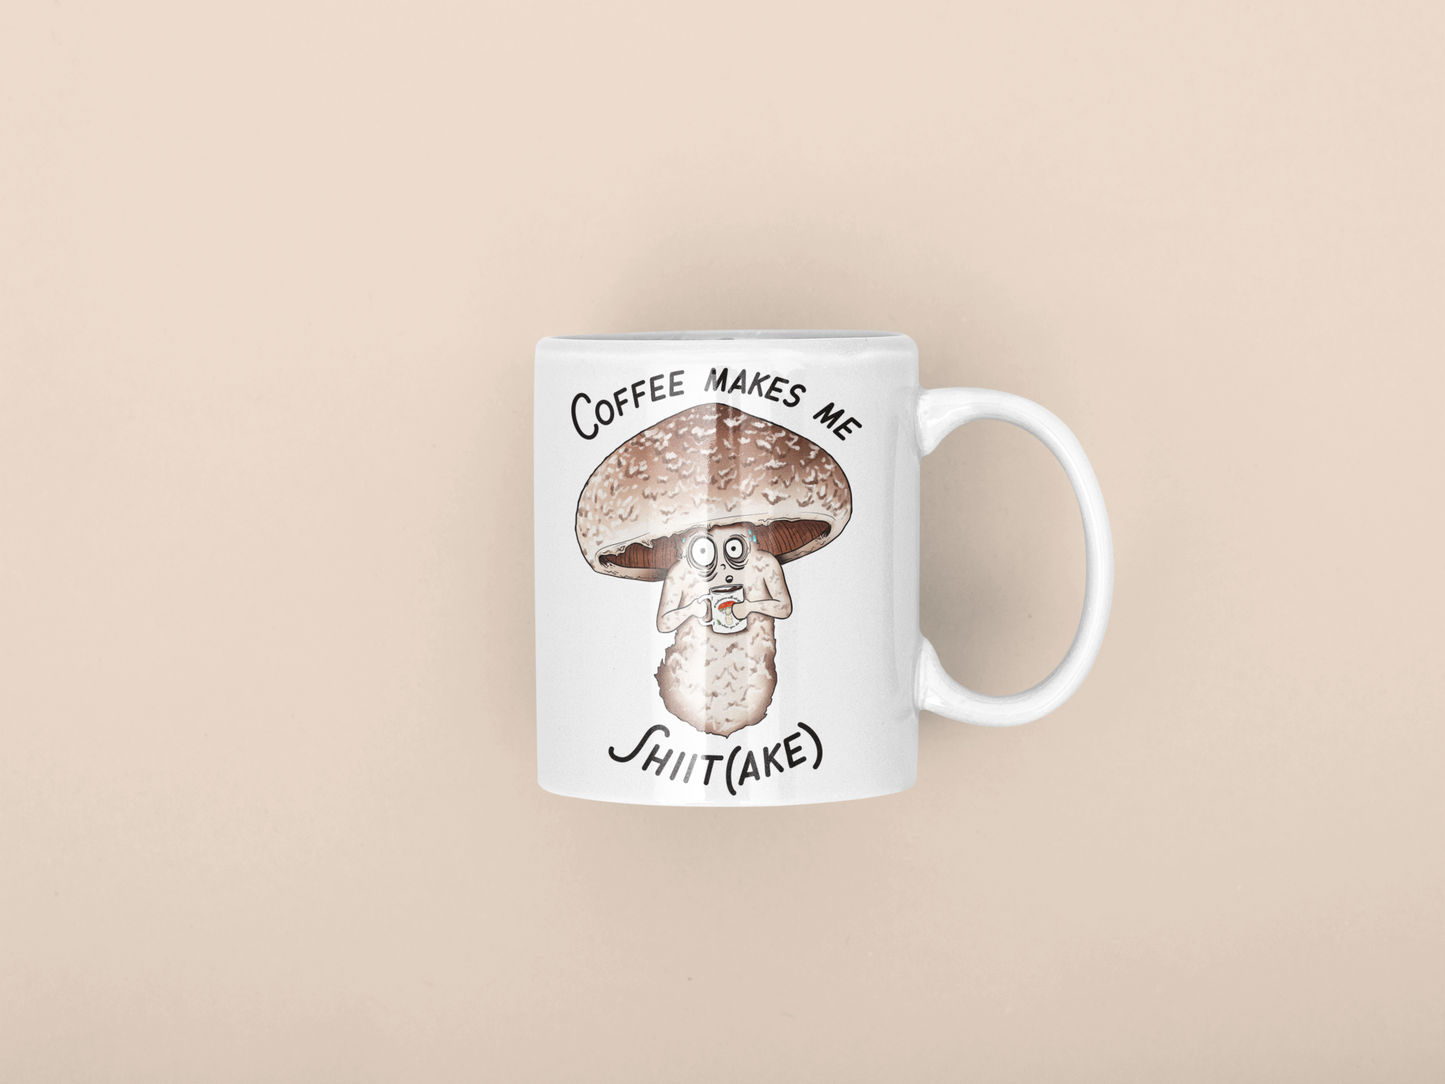 Coffee Makes Me Shiitake | Funny Mushroom Mug | Mushroom Artwork on Ceramic Cup | 11oz/15oz Sizes